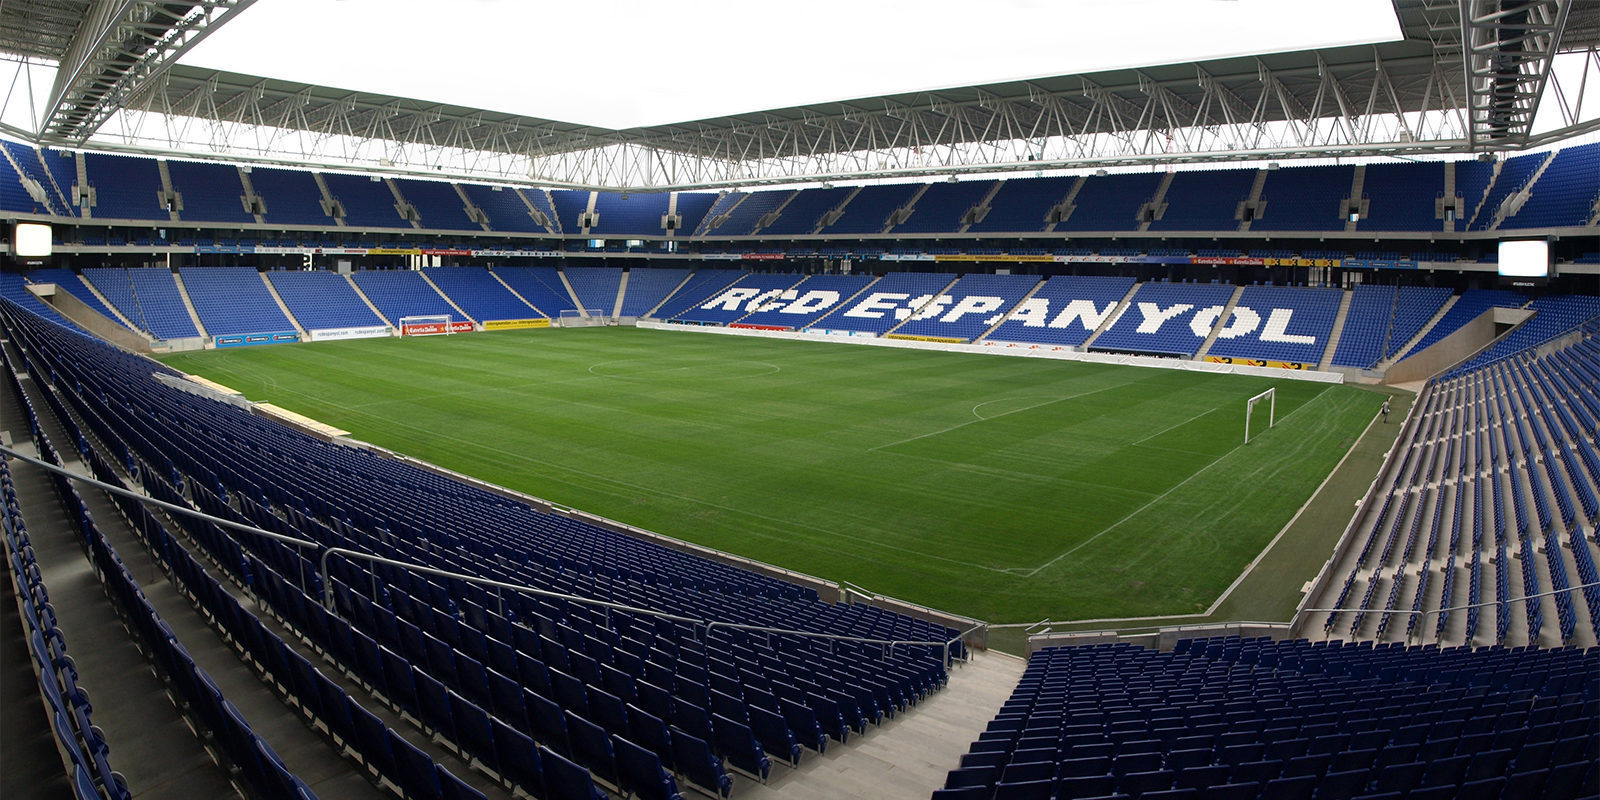 El RCD Espanyol de Barcelona hace oficial su equipo de eSports